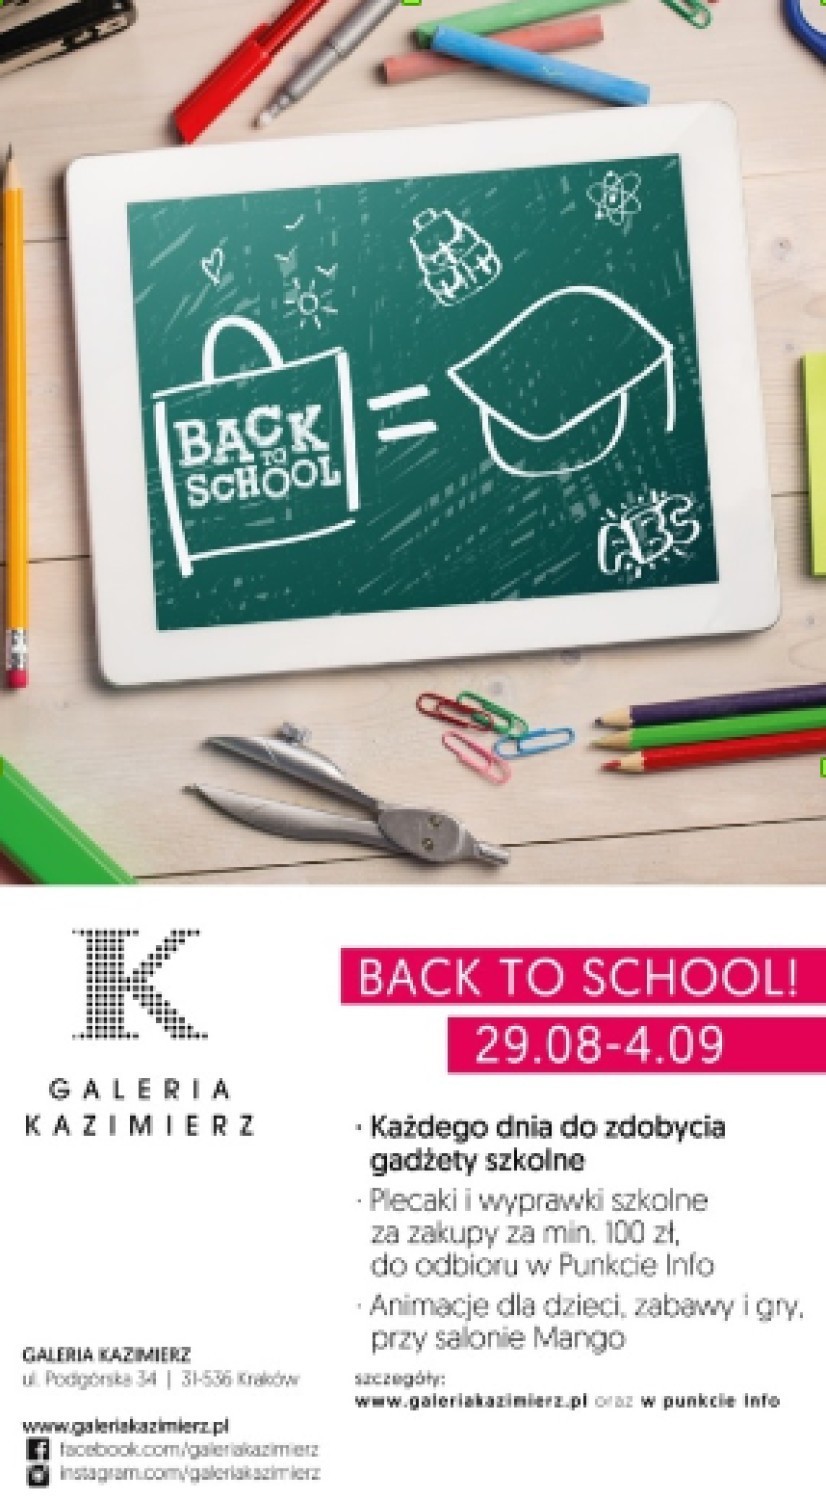 Back to school” - Galeria Kazimierz rozdaje szkolne gadżety | Kraków Nasze  Miasto